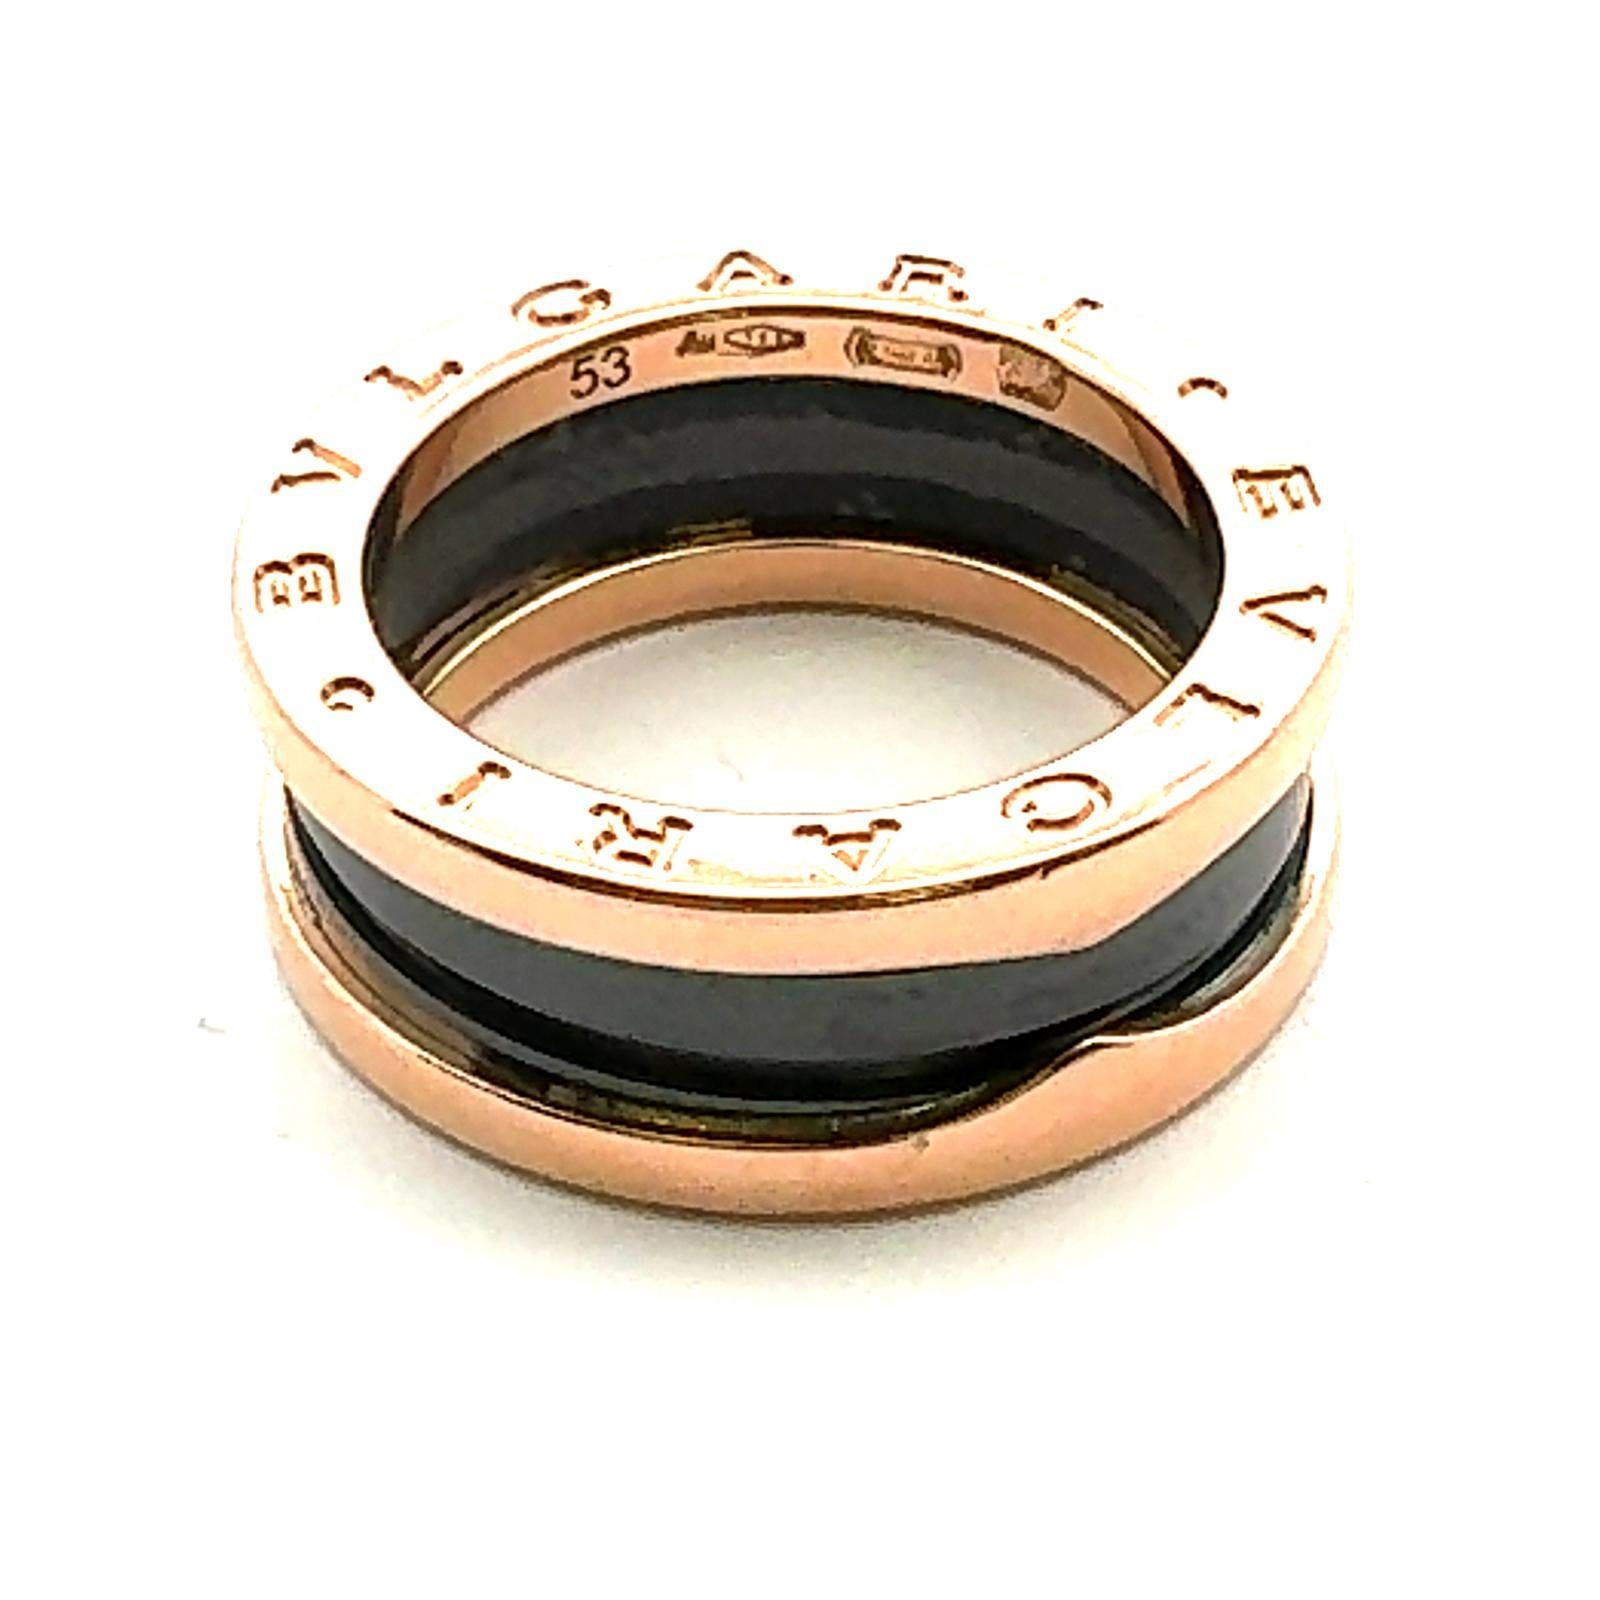 BVLGARI 18 Karat Rose Gold & Ceramic B-Zero Ring Size 53 ( US Size 6) For Sale 1